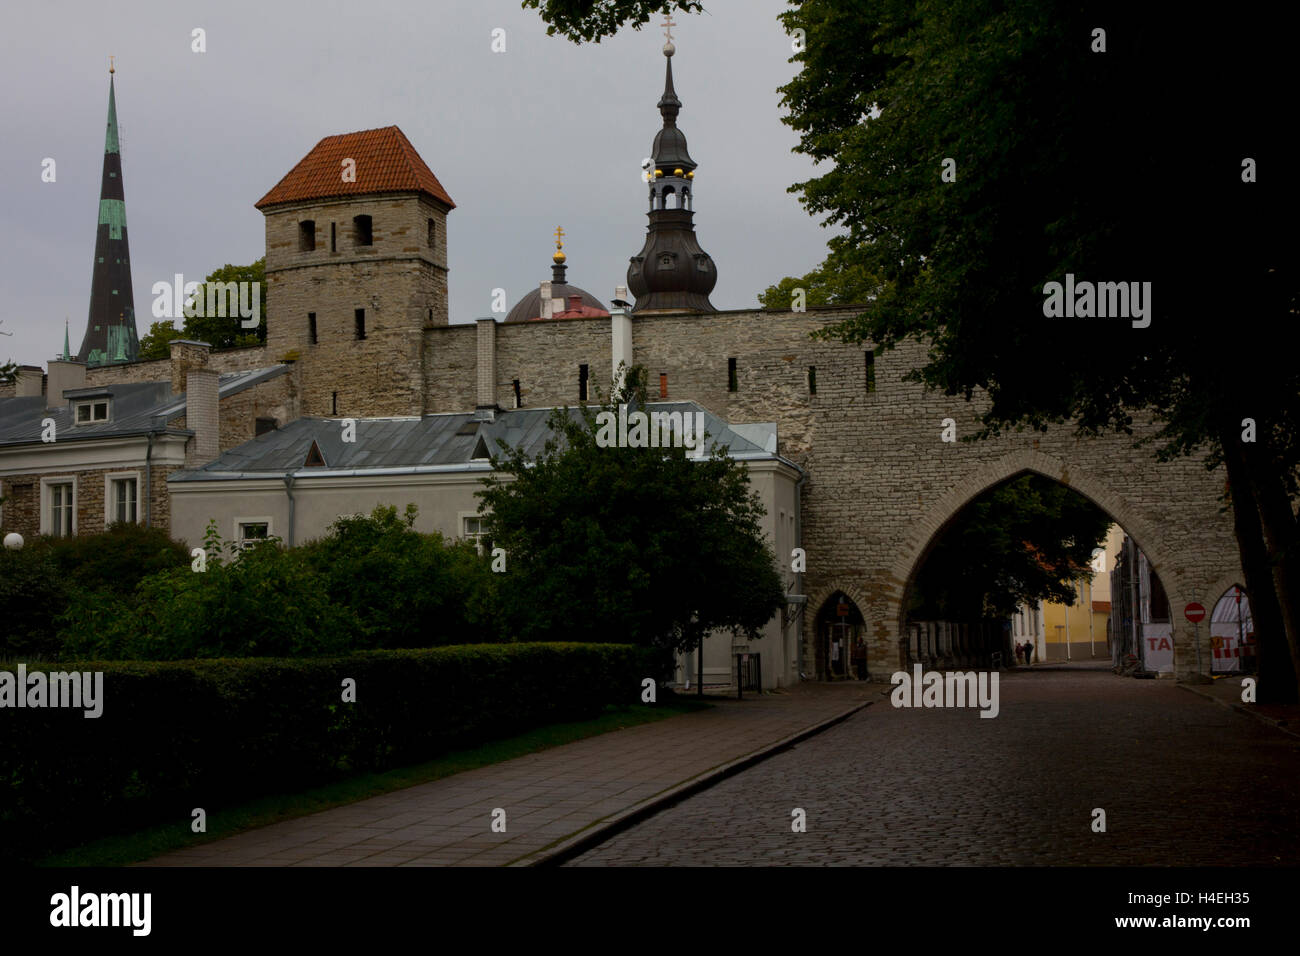 Tallinn wird oft als zitiert, der am besten erhaltenen mittelalterlichen Altstadt in ganz Europa.  Tallinn, Estland. Stockfoto